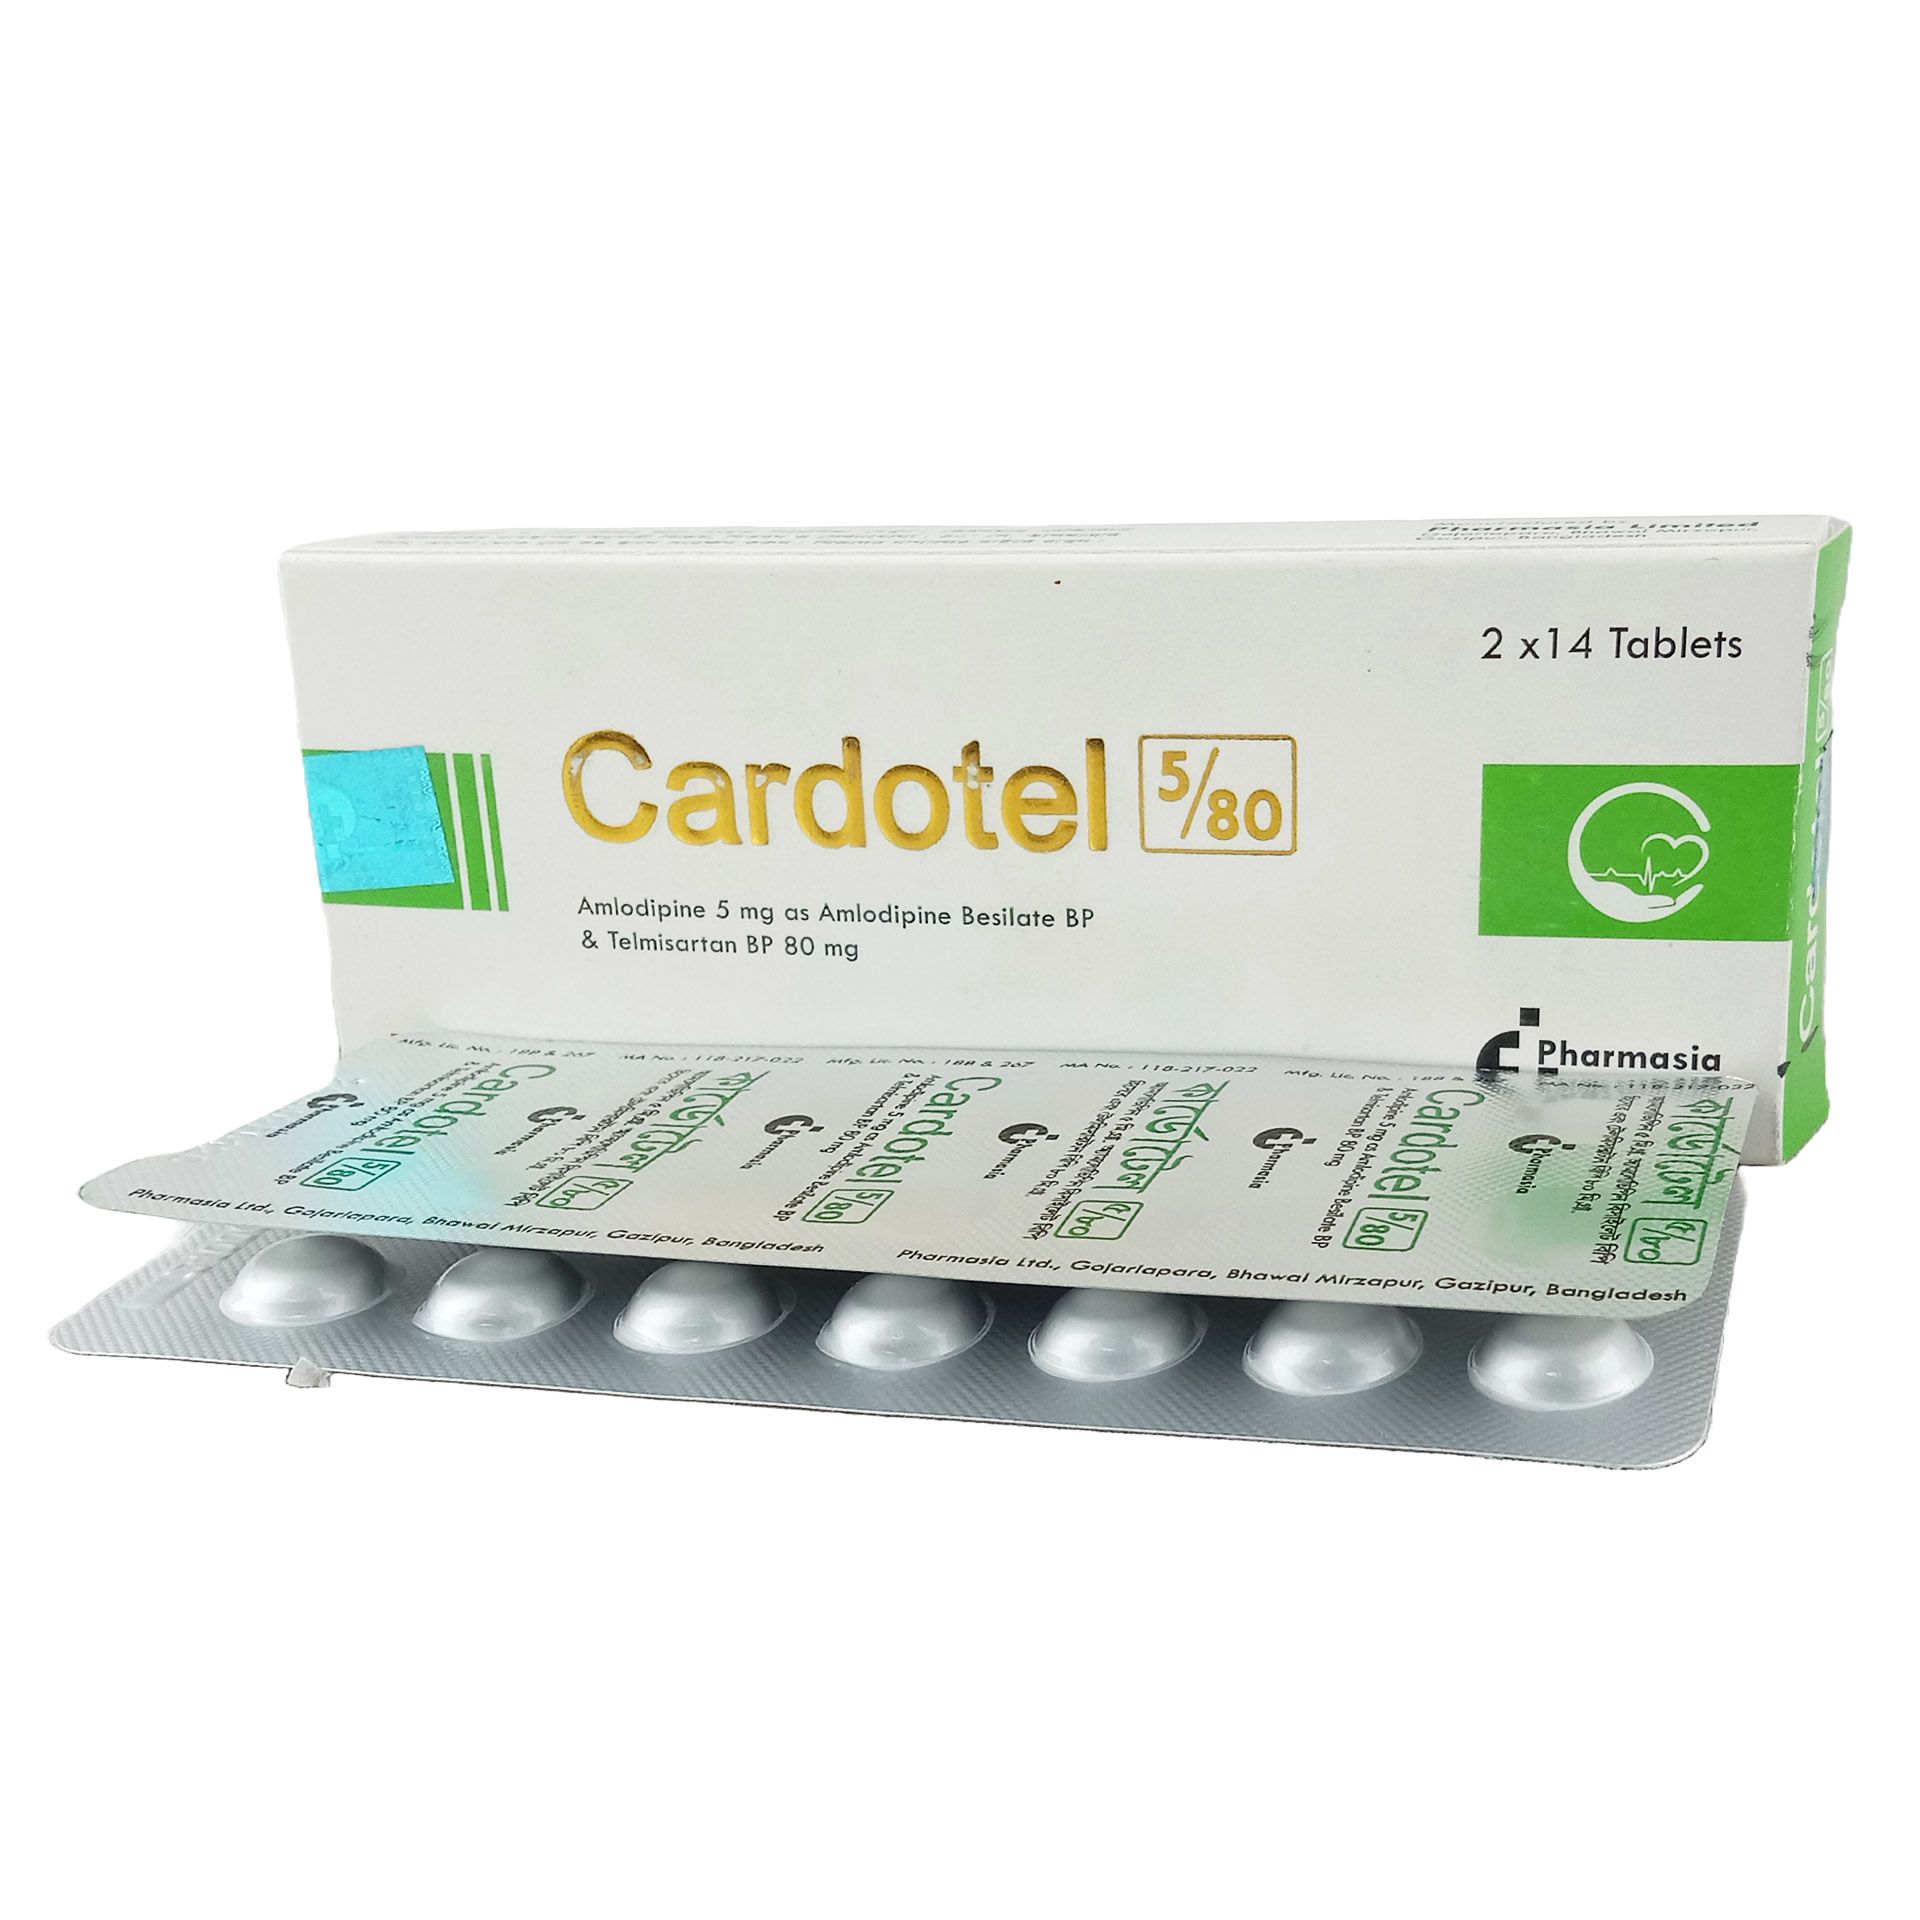 Cardotel 5/80mg+5mg Tablet